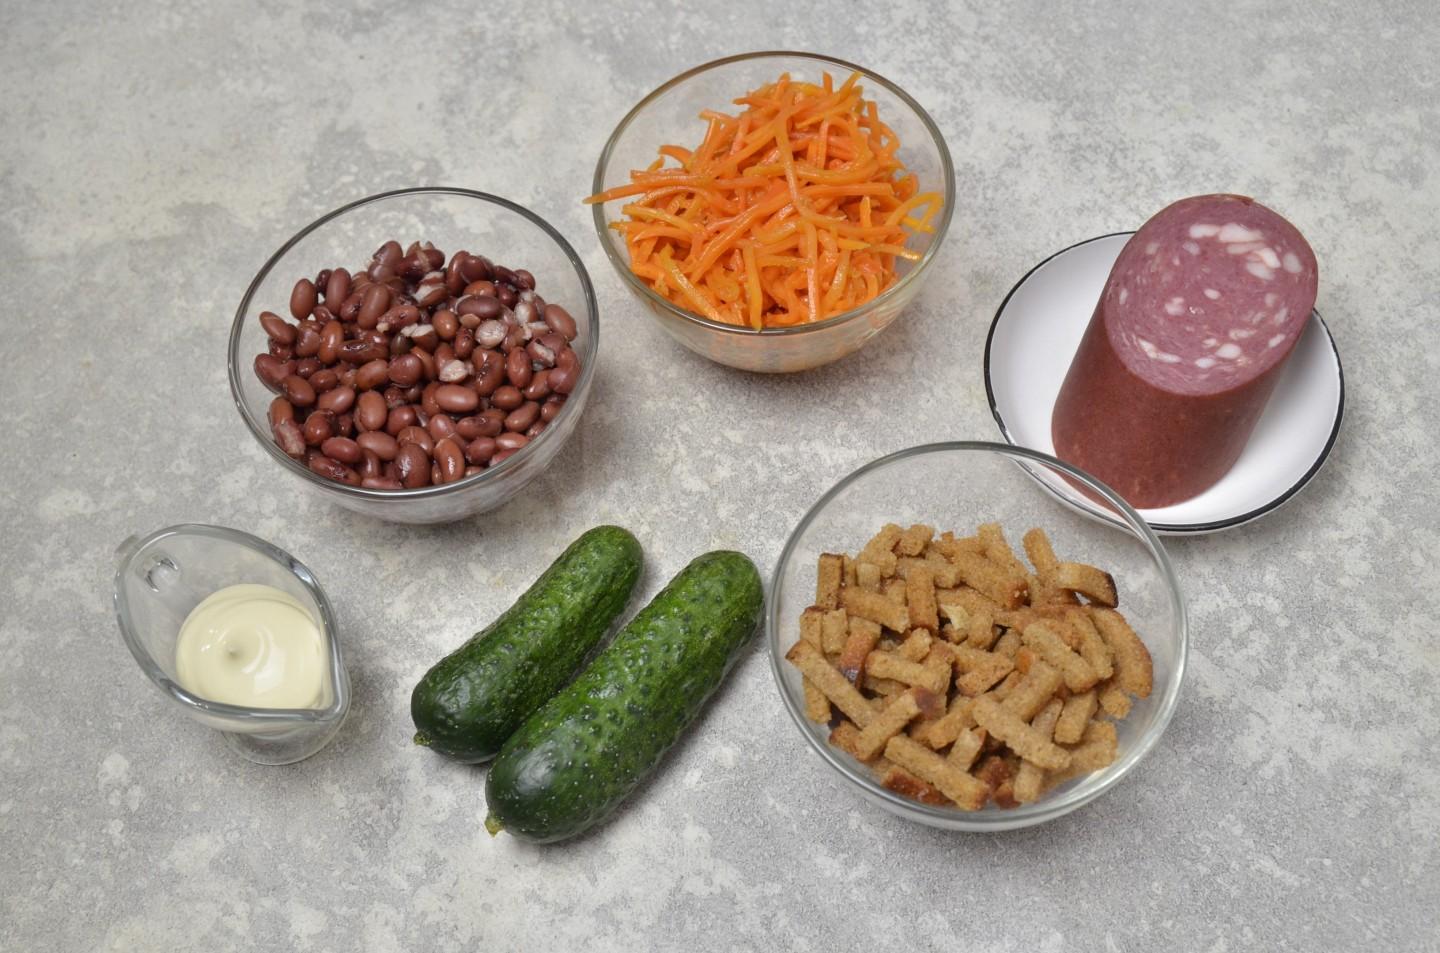 Салат с фасолью колбасой и корейской морковкой. Шаурма с колбасой с морковкой по-корейски с майонезом и кетчупом. Фасоль 100гр фото.